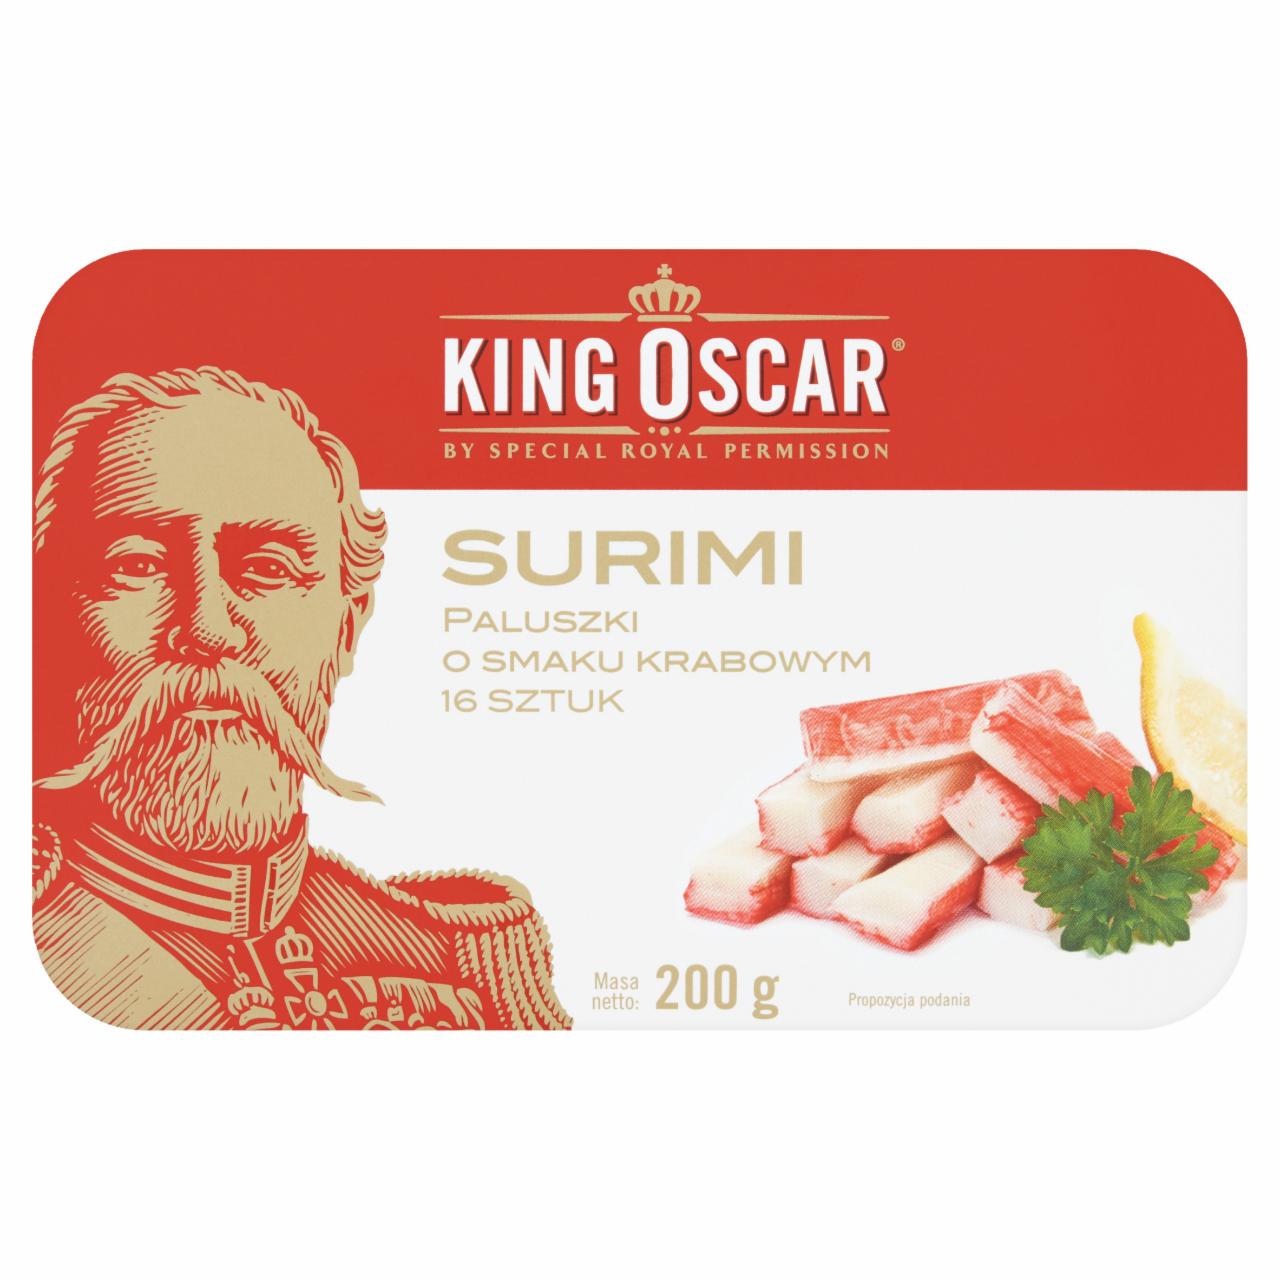 Zdjęcia - King Oscar Surimi paluszki o smaku krabowym 200 g (16 sztuk)